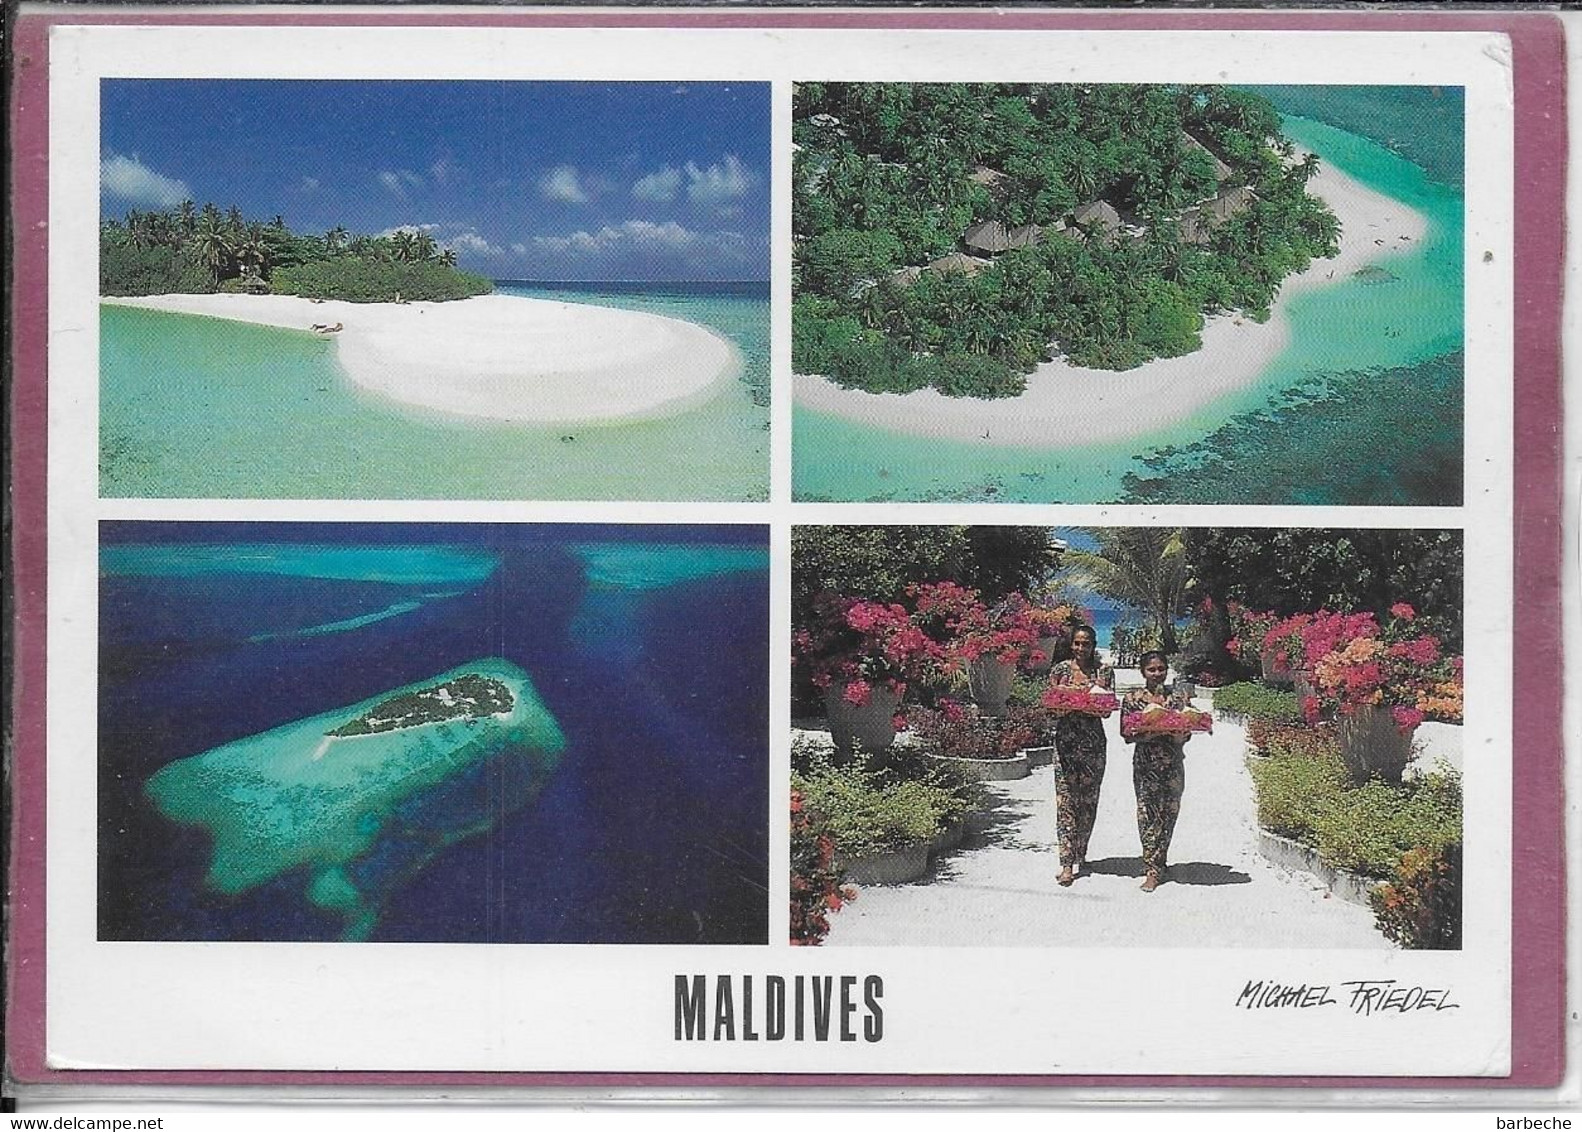 MALDIVES - Embudu - Maldiven